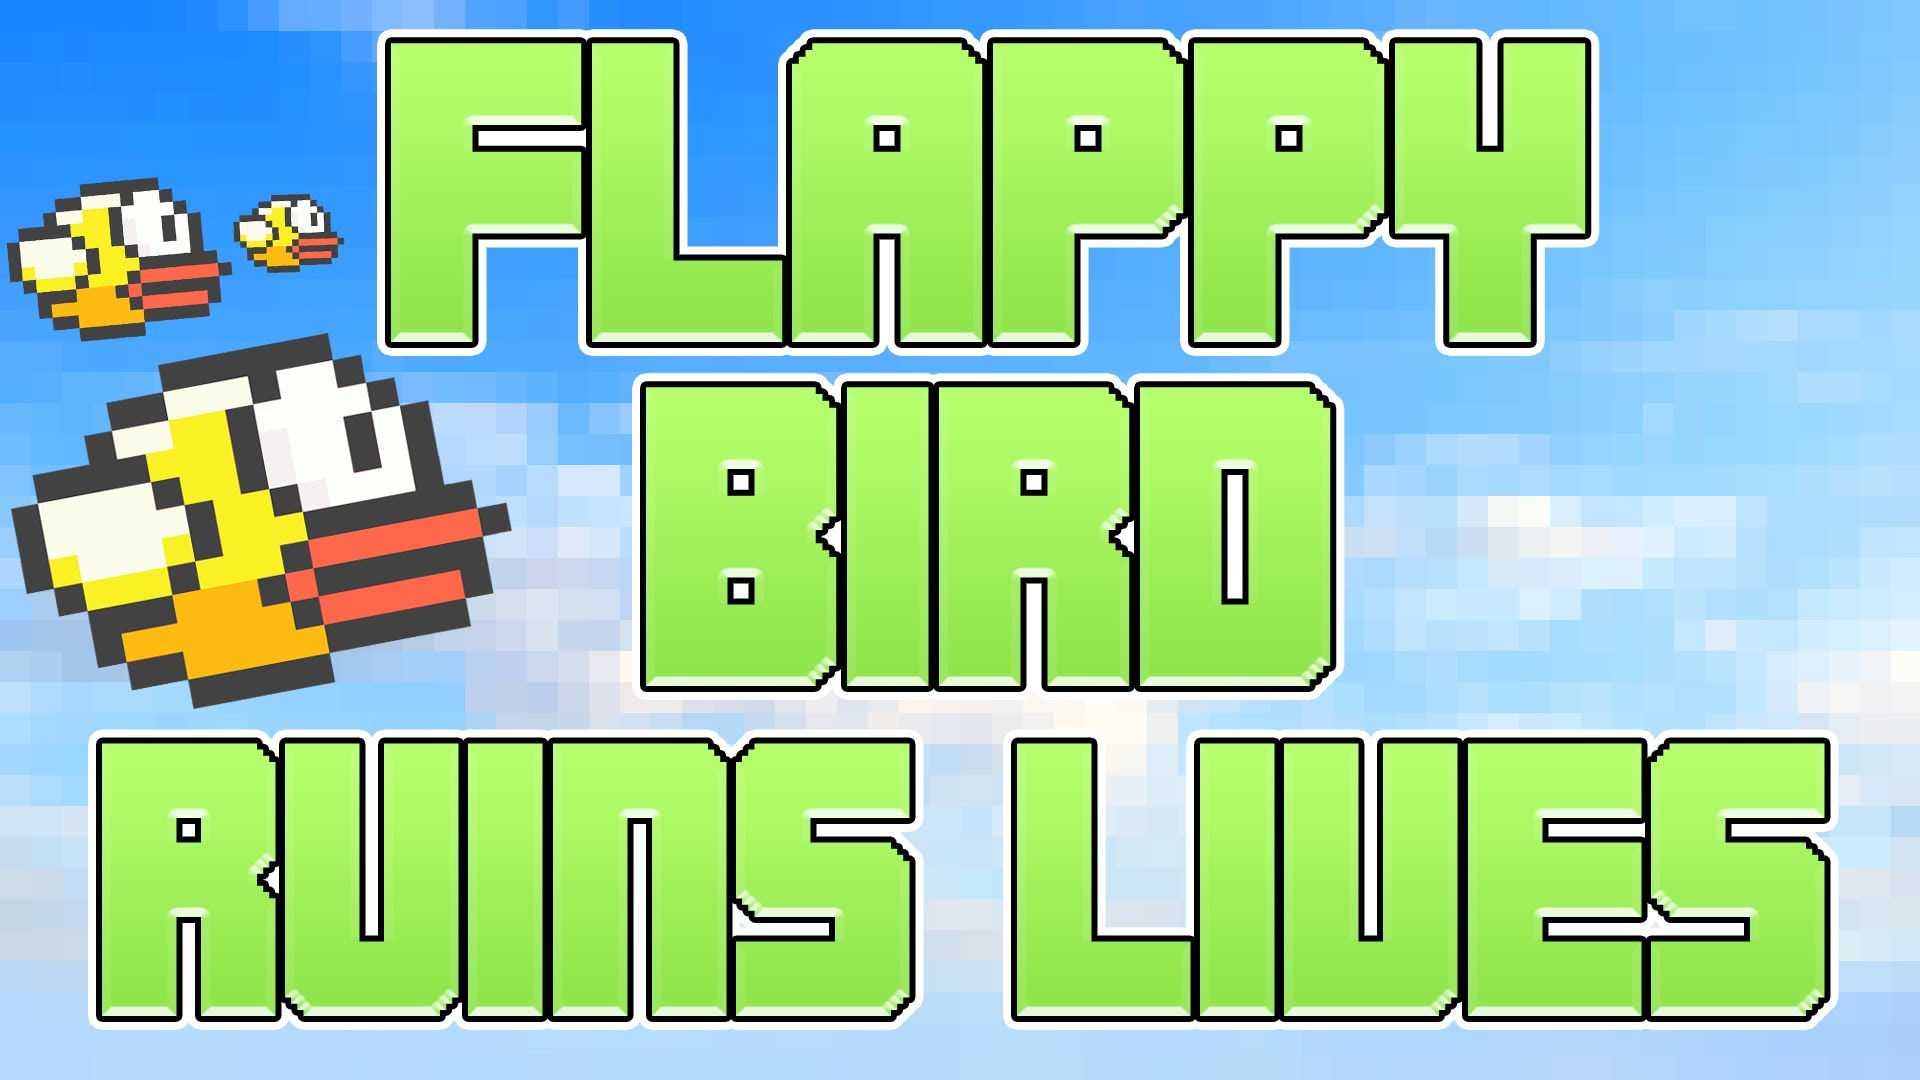 flappy bird online free games